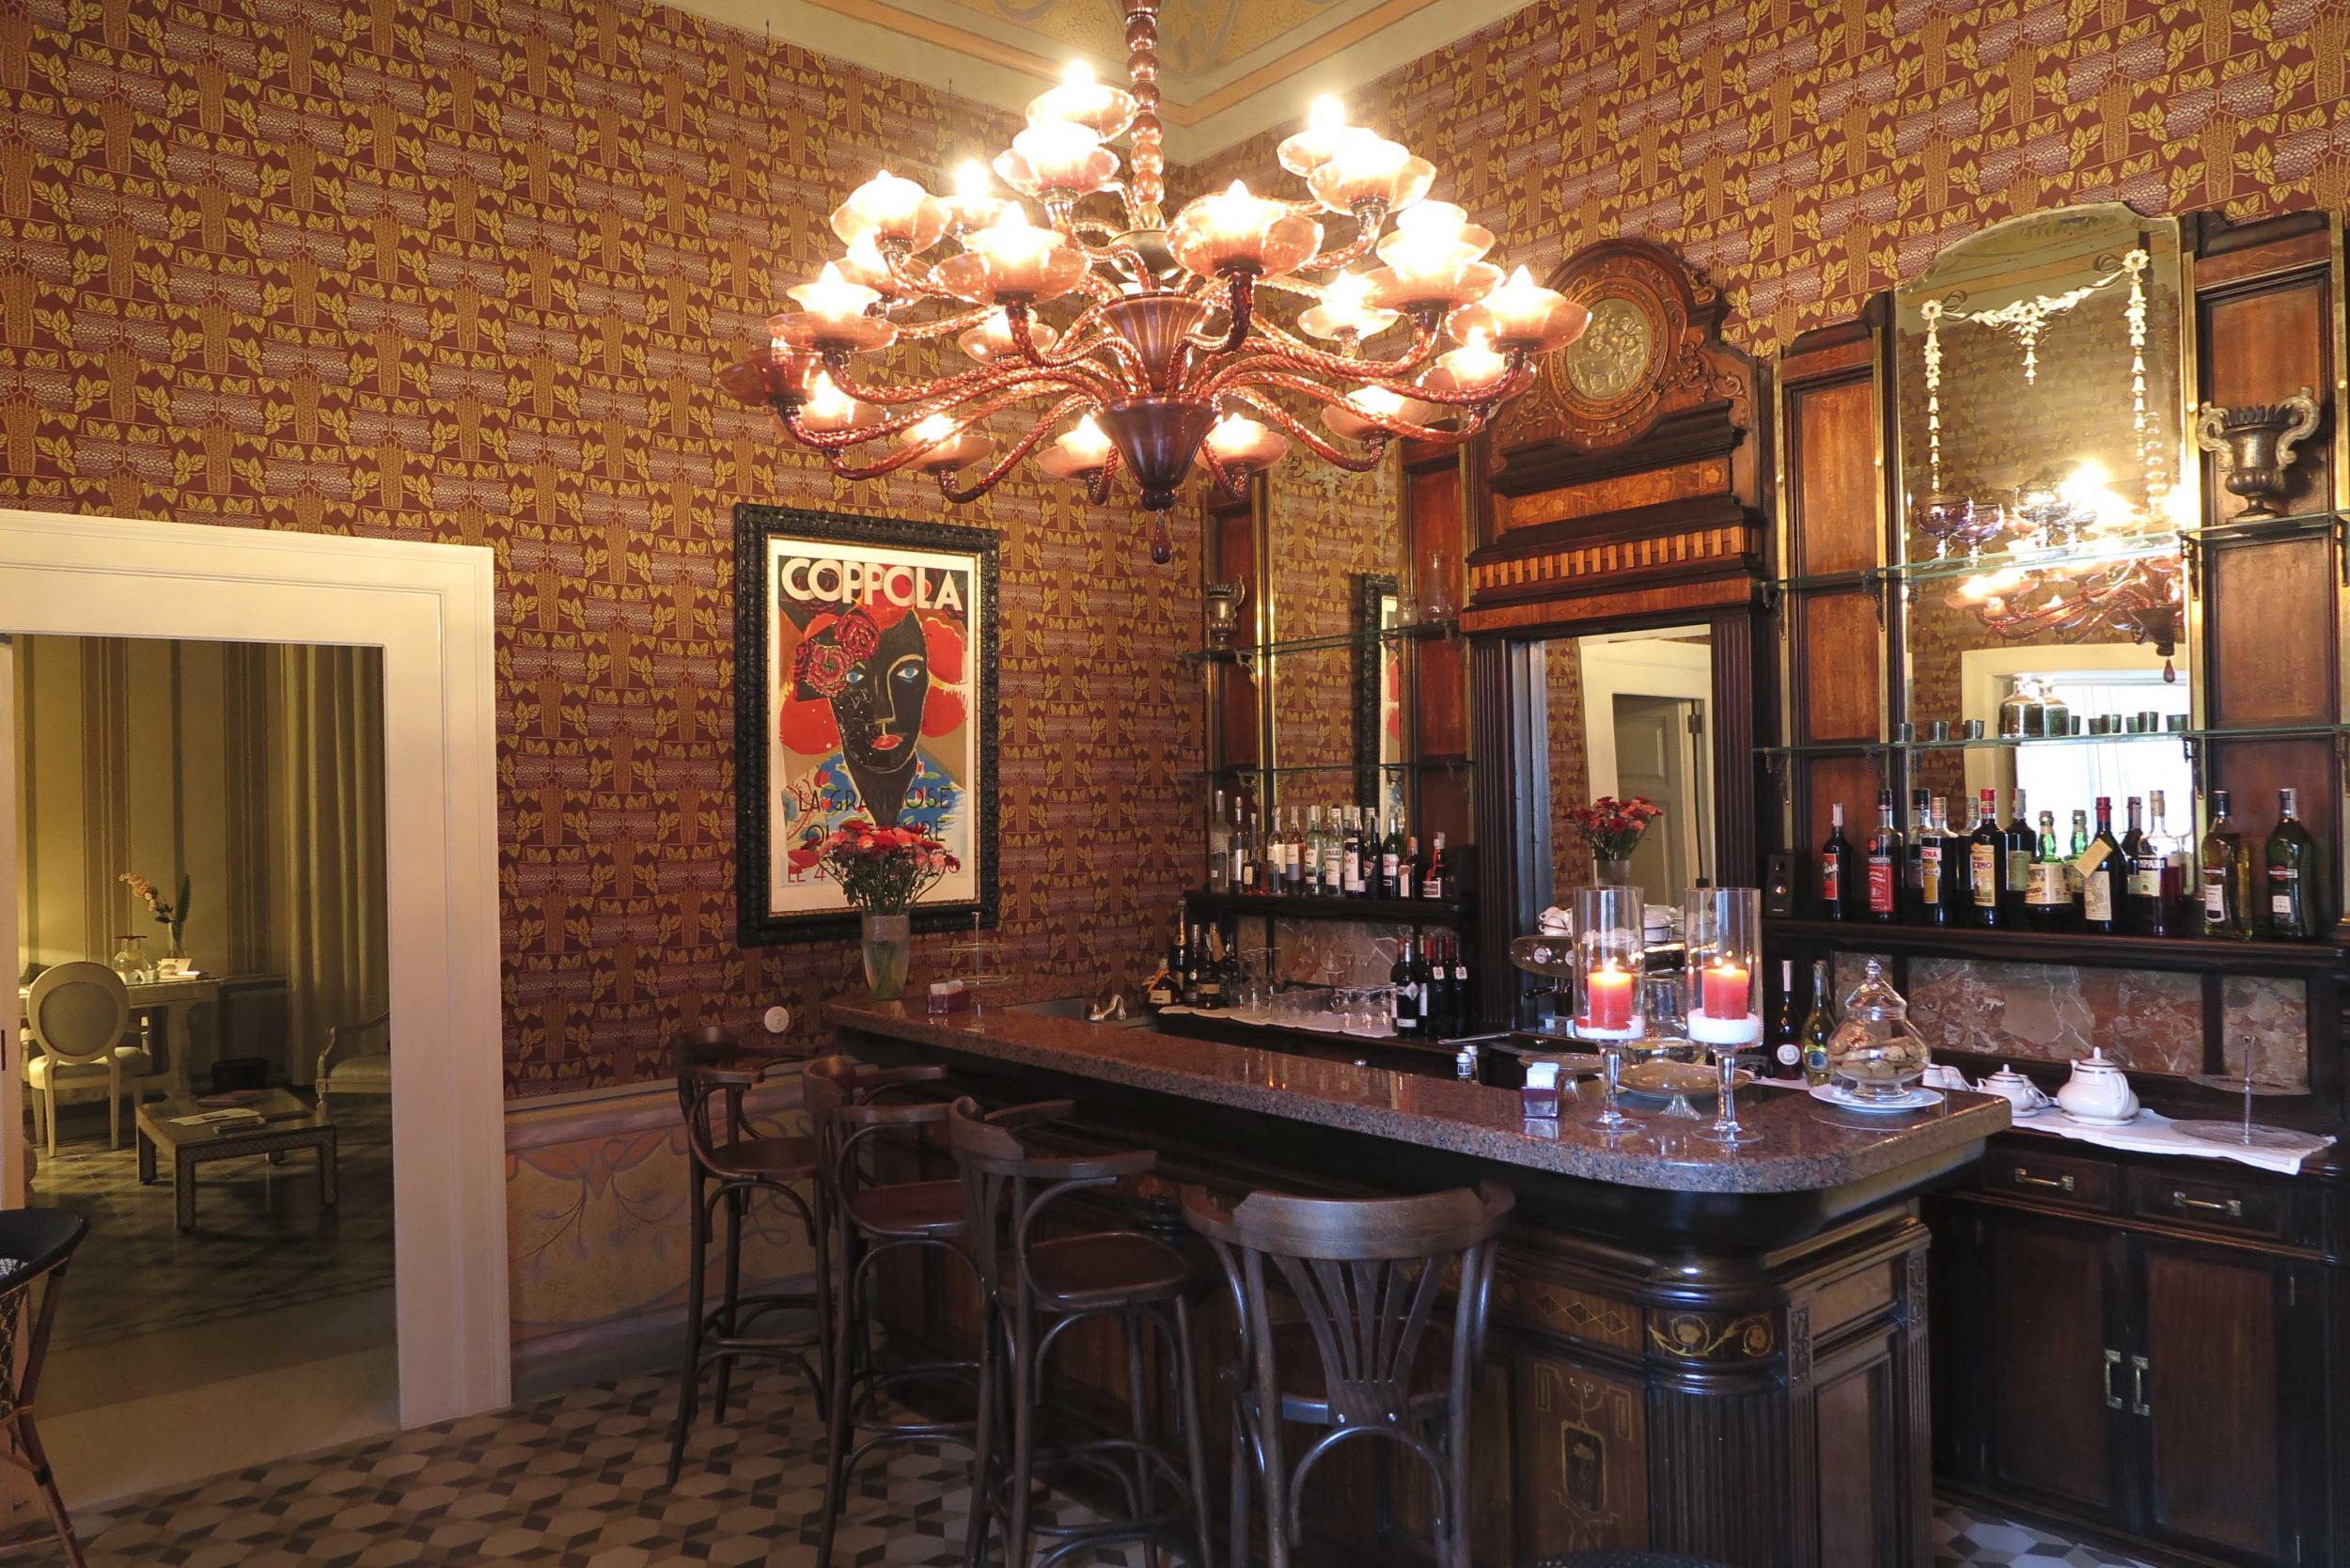 The bar at Palazzo Margherita